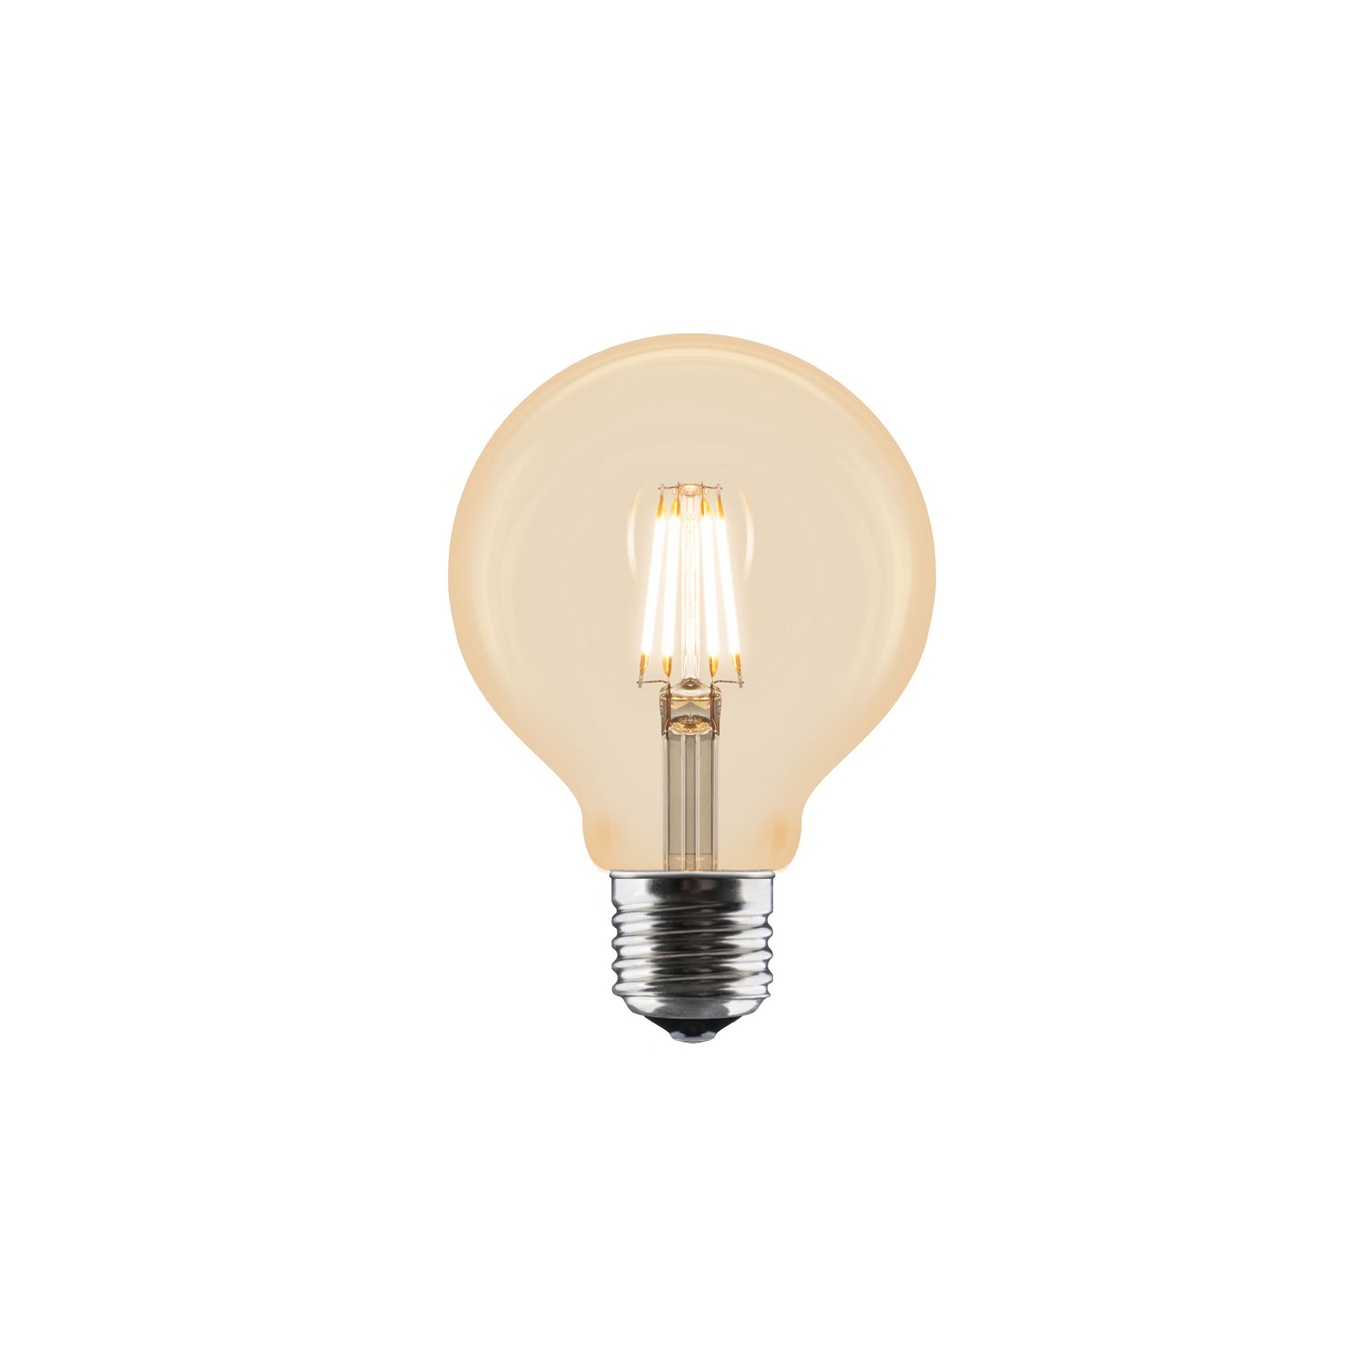 Idea Bulb E27 LED 2W, 80 mm